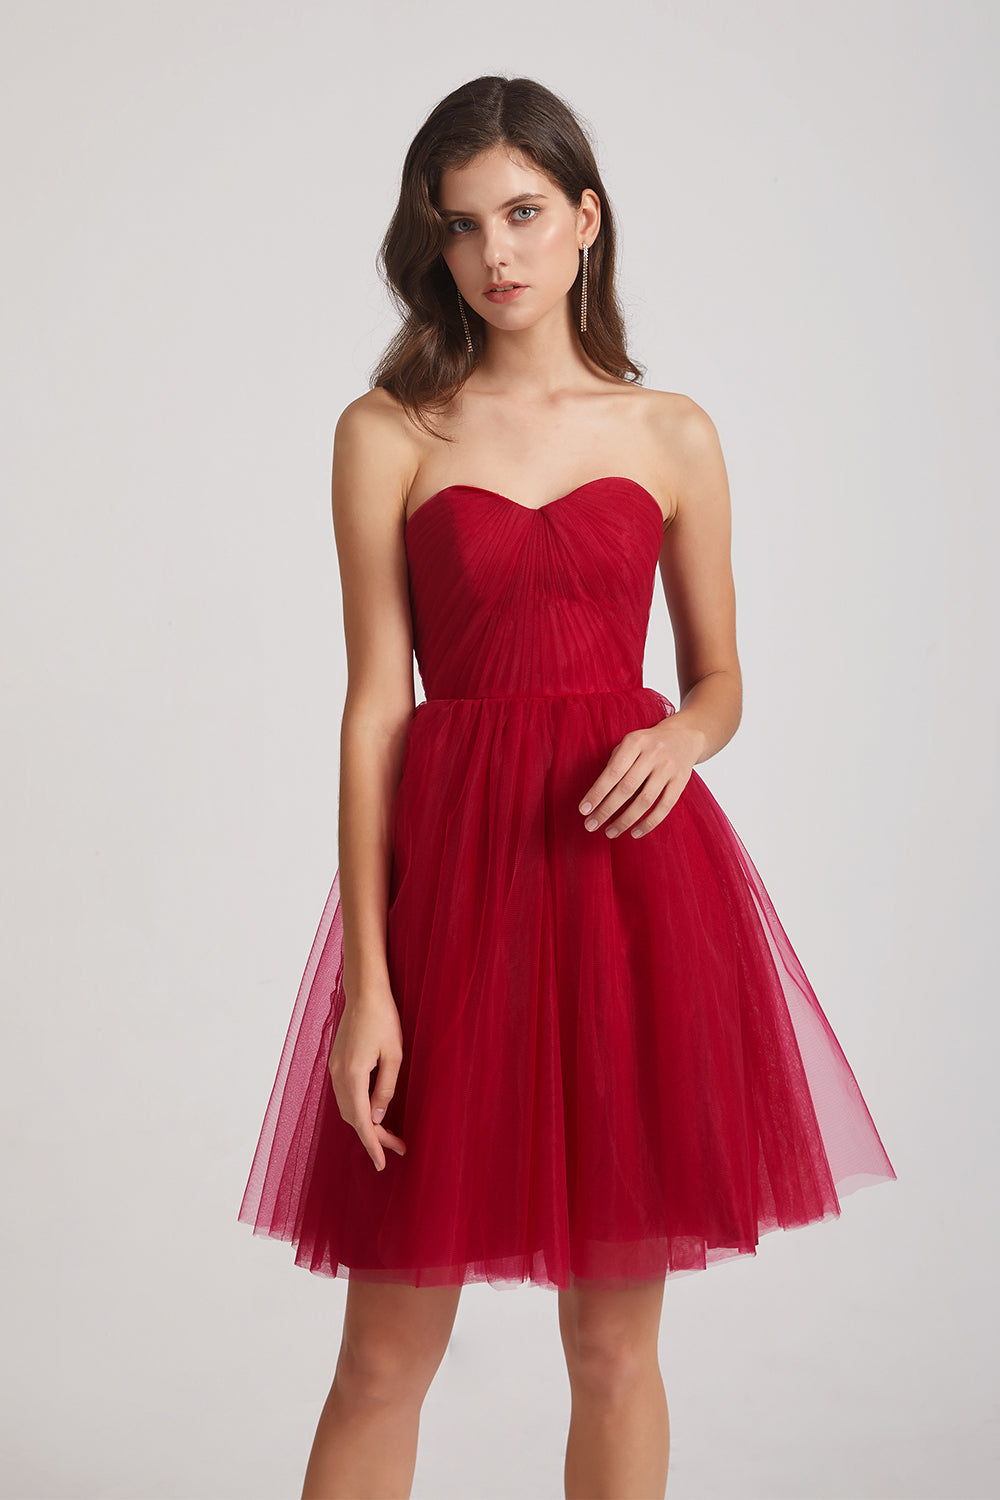 morden dark red short tulle bridesmaid dress